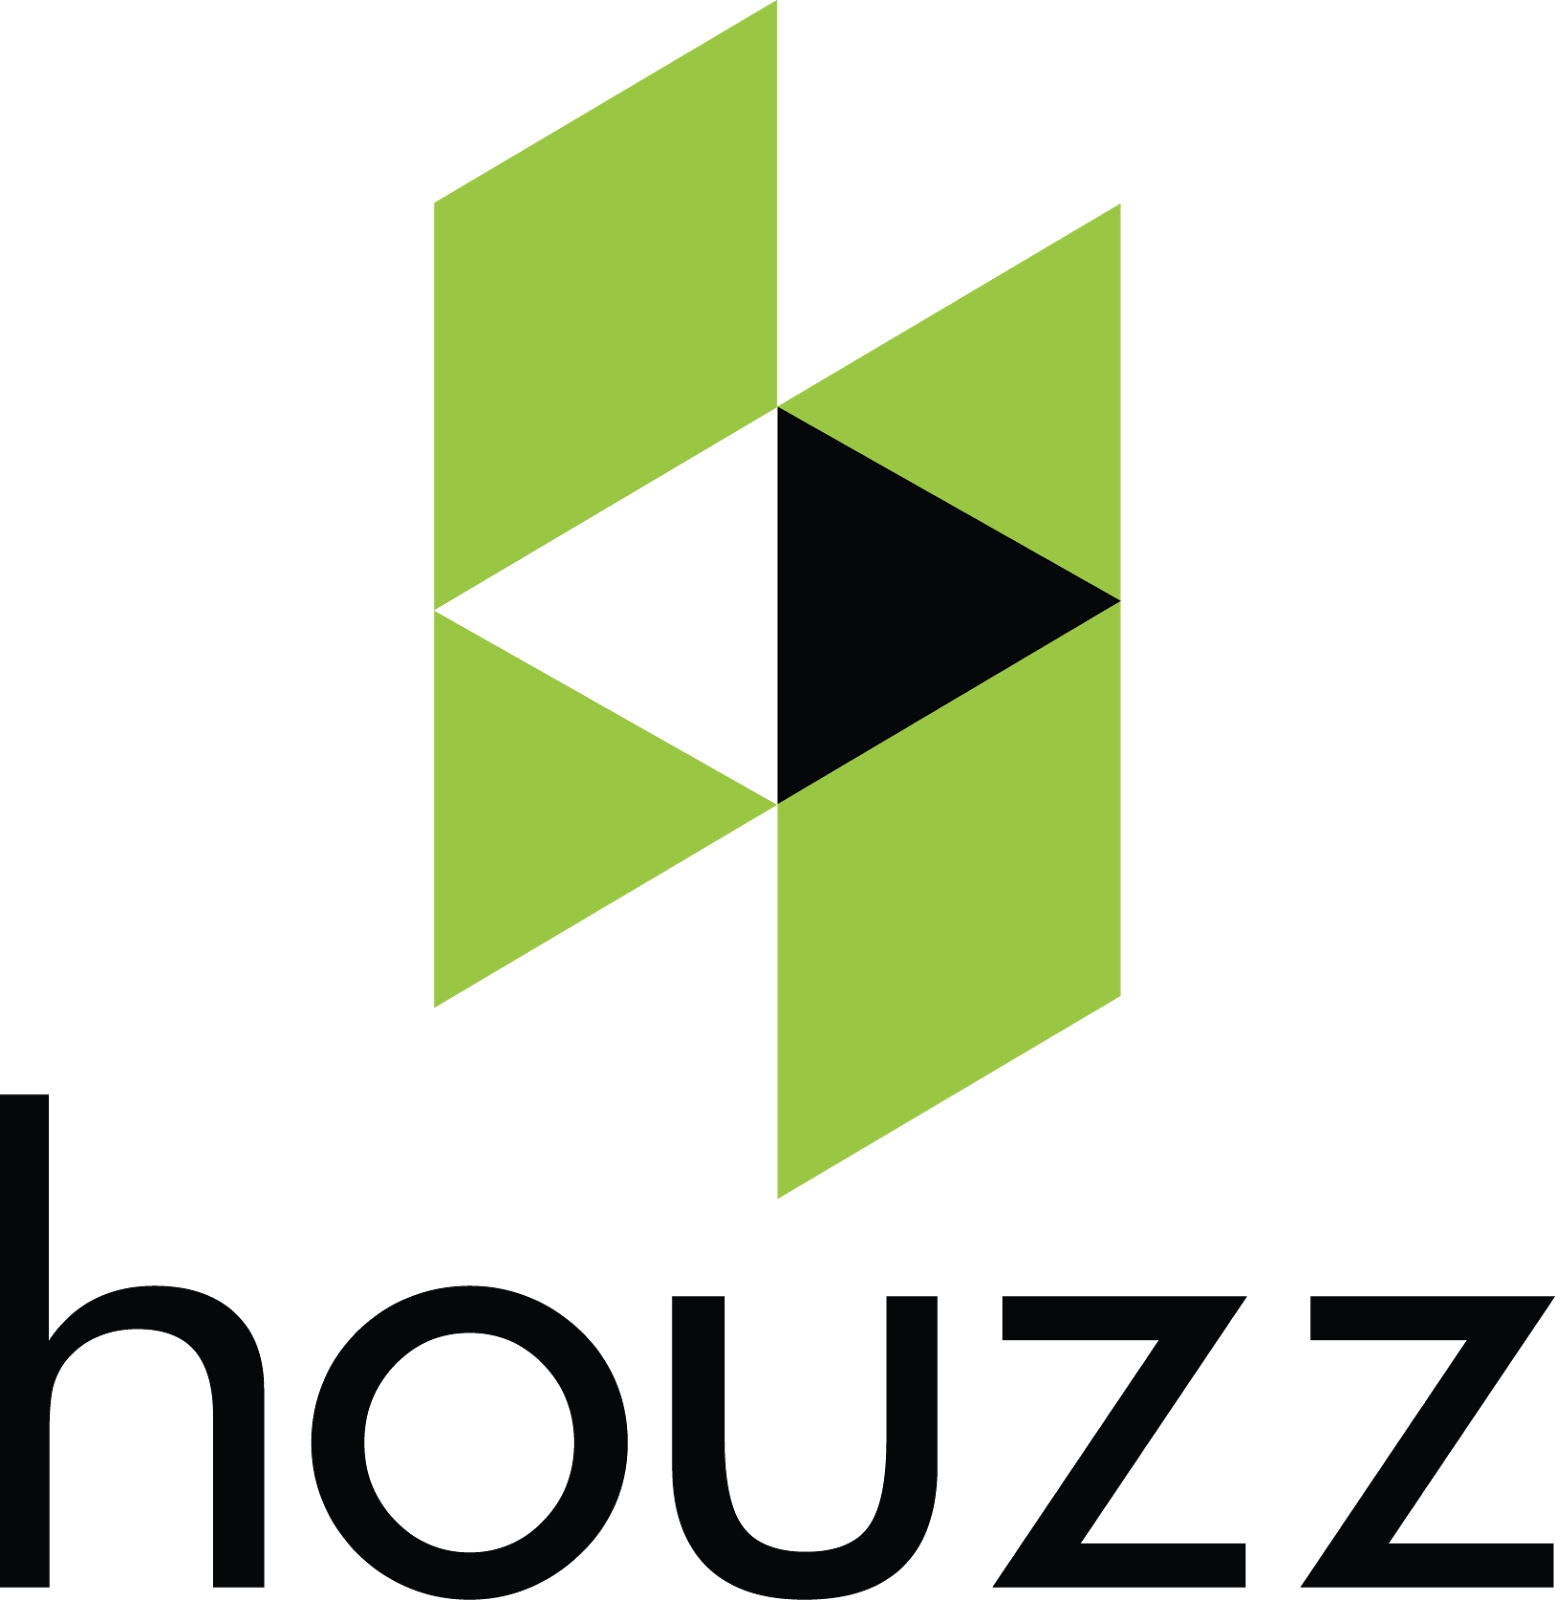 www.houzz.com